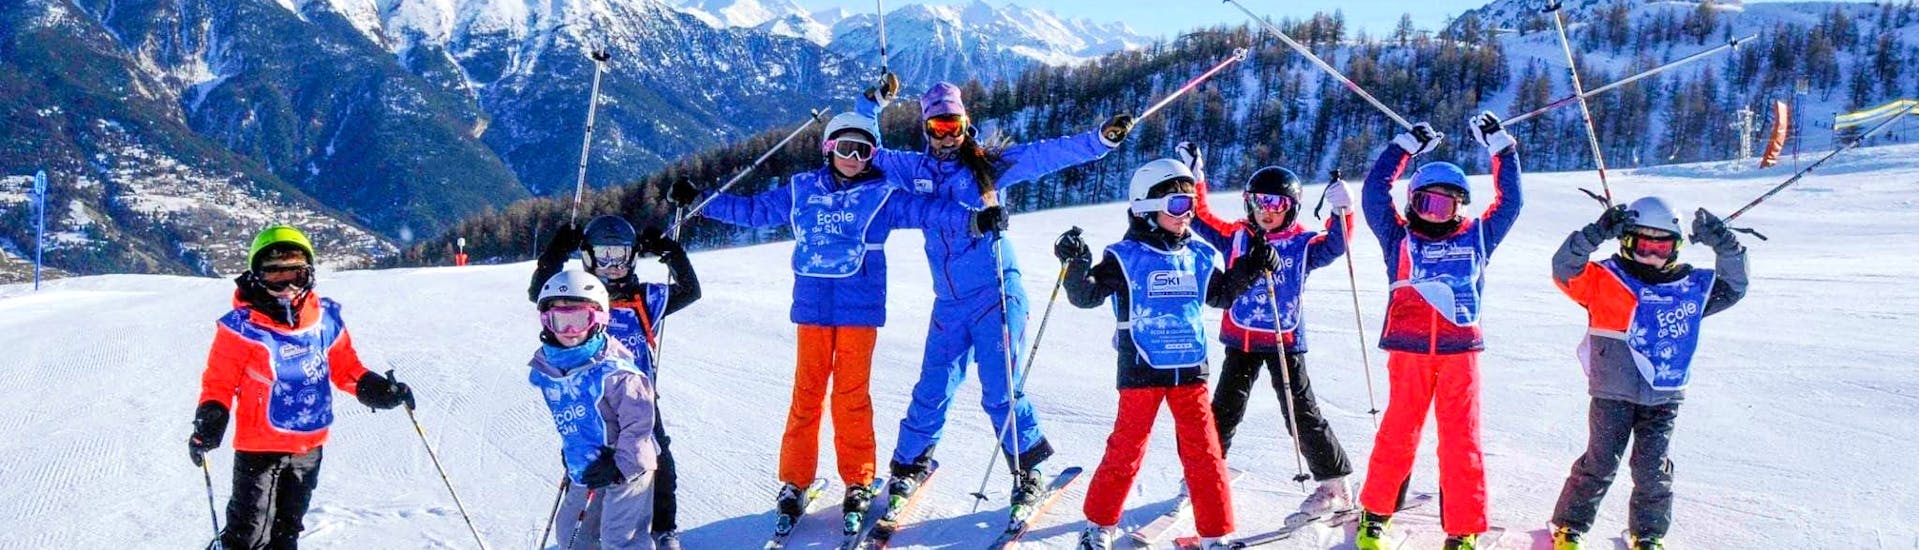 Kids Ski Lessons (4-12 y.) for All Levels in Villeneuve.